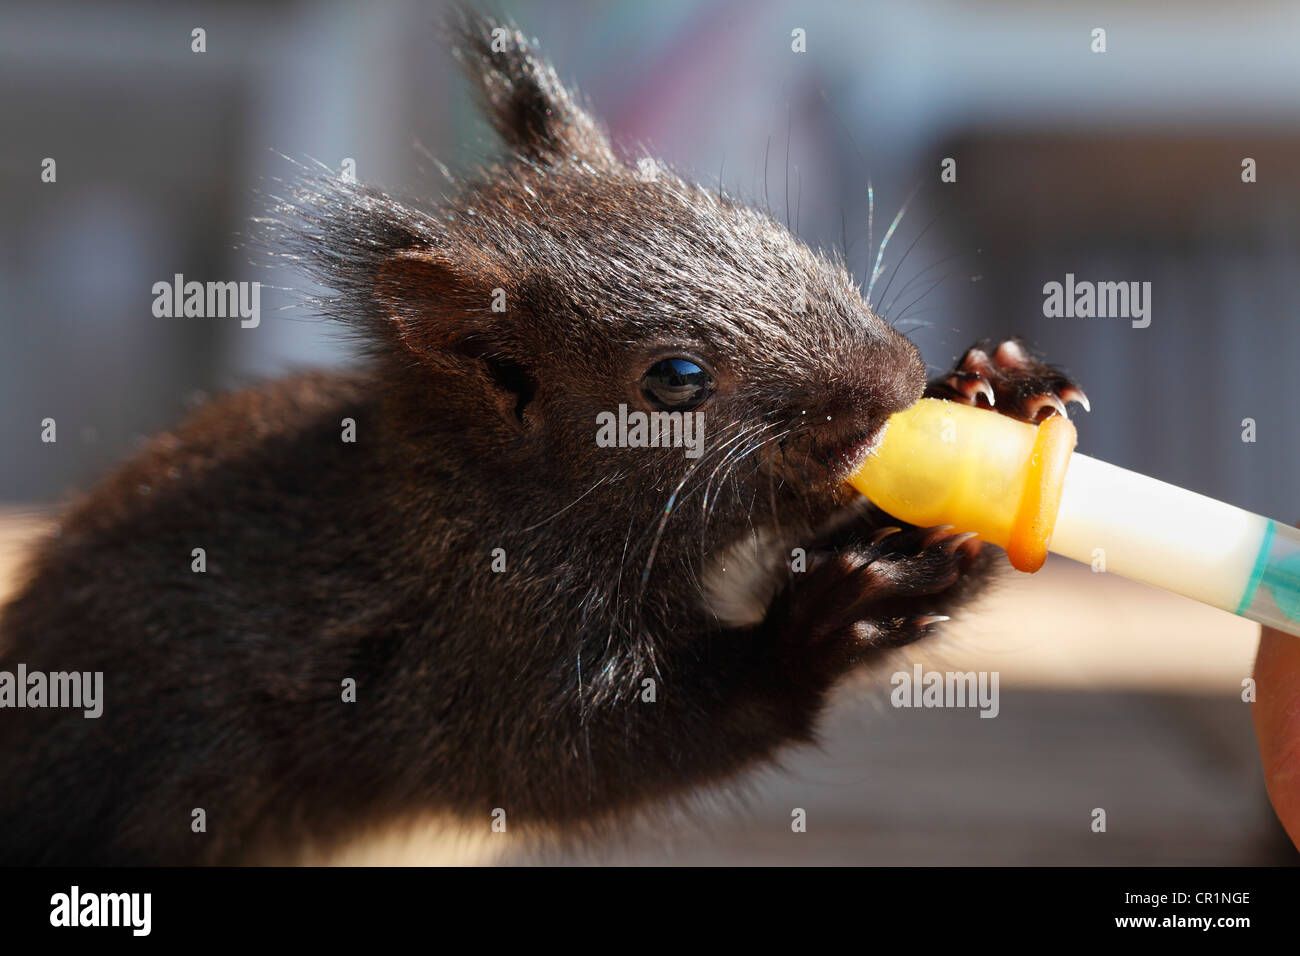 Jeune écureuil roux (Sciurus vulgaris) est alimenté avec une pipette, Bavaria, Germany, Europe Banque D'Images